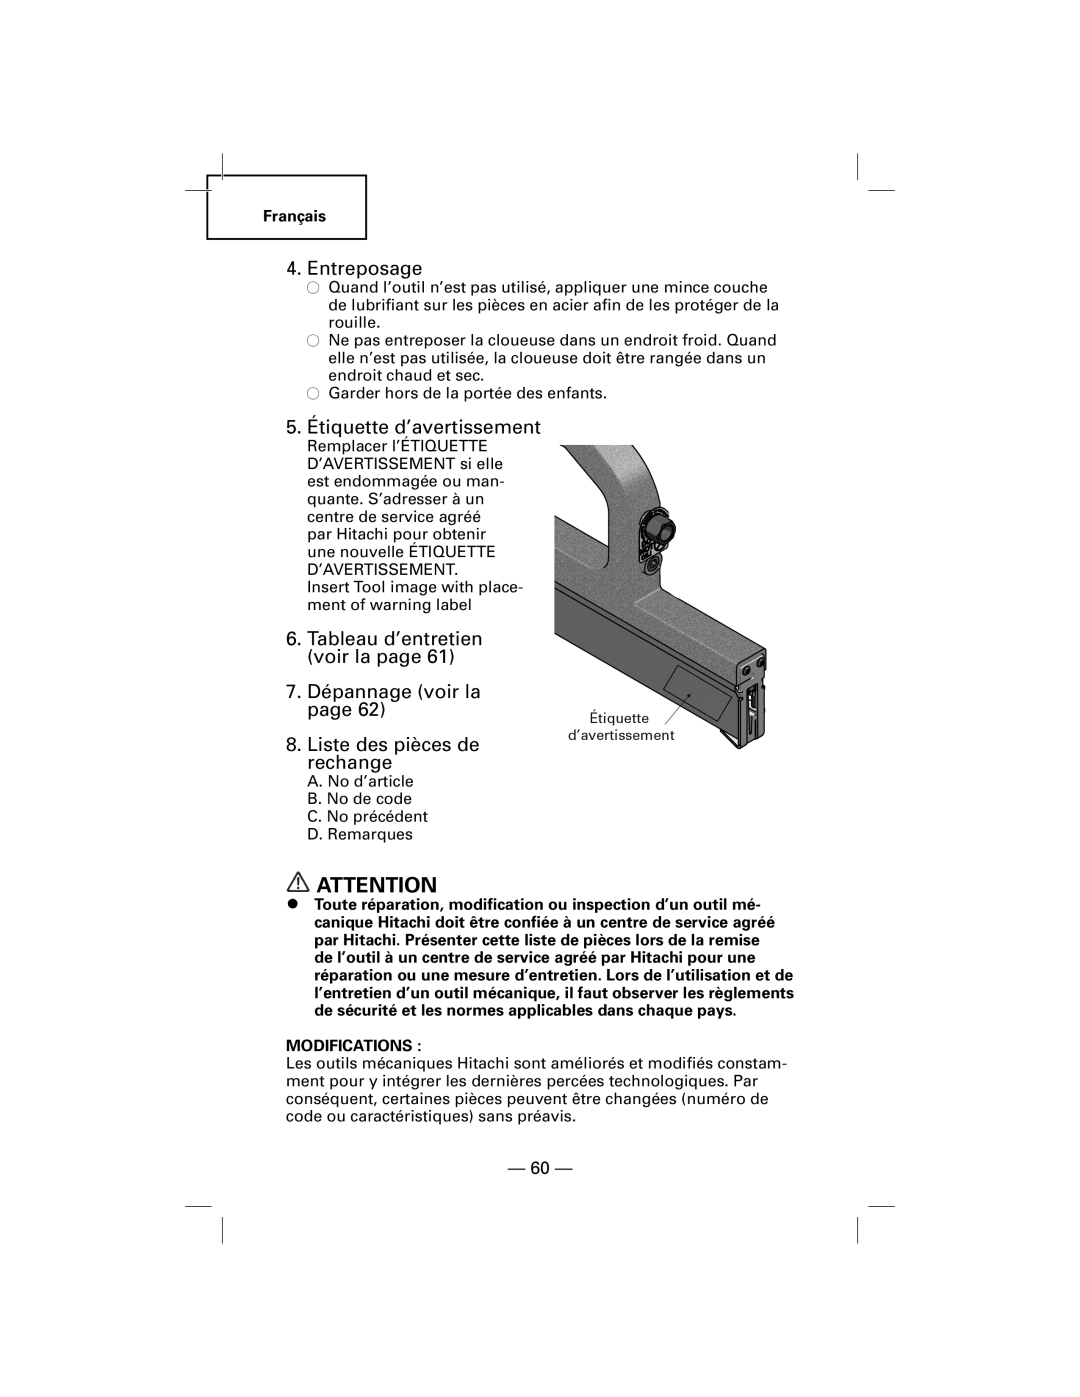 Hitachi NT50AGF manual Entreposage, 5.Étiquette d’avertissement, Tableau d’entretien voir la page, 7.Dépannage voir la page 